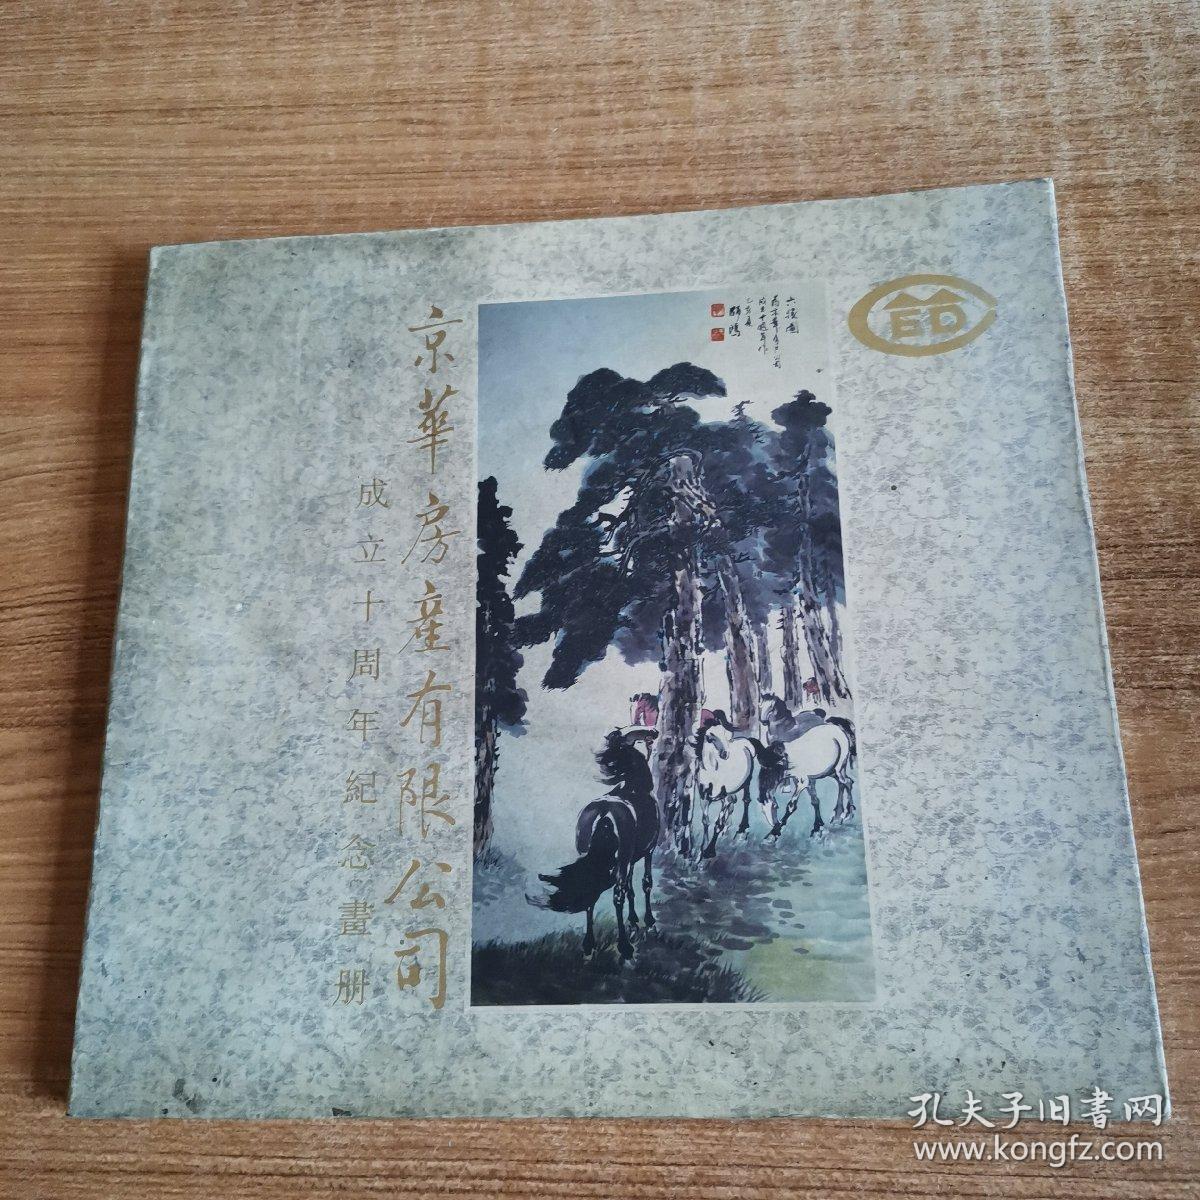 京华房产有限公司成立十周年纪念画册